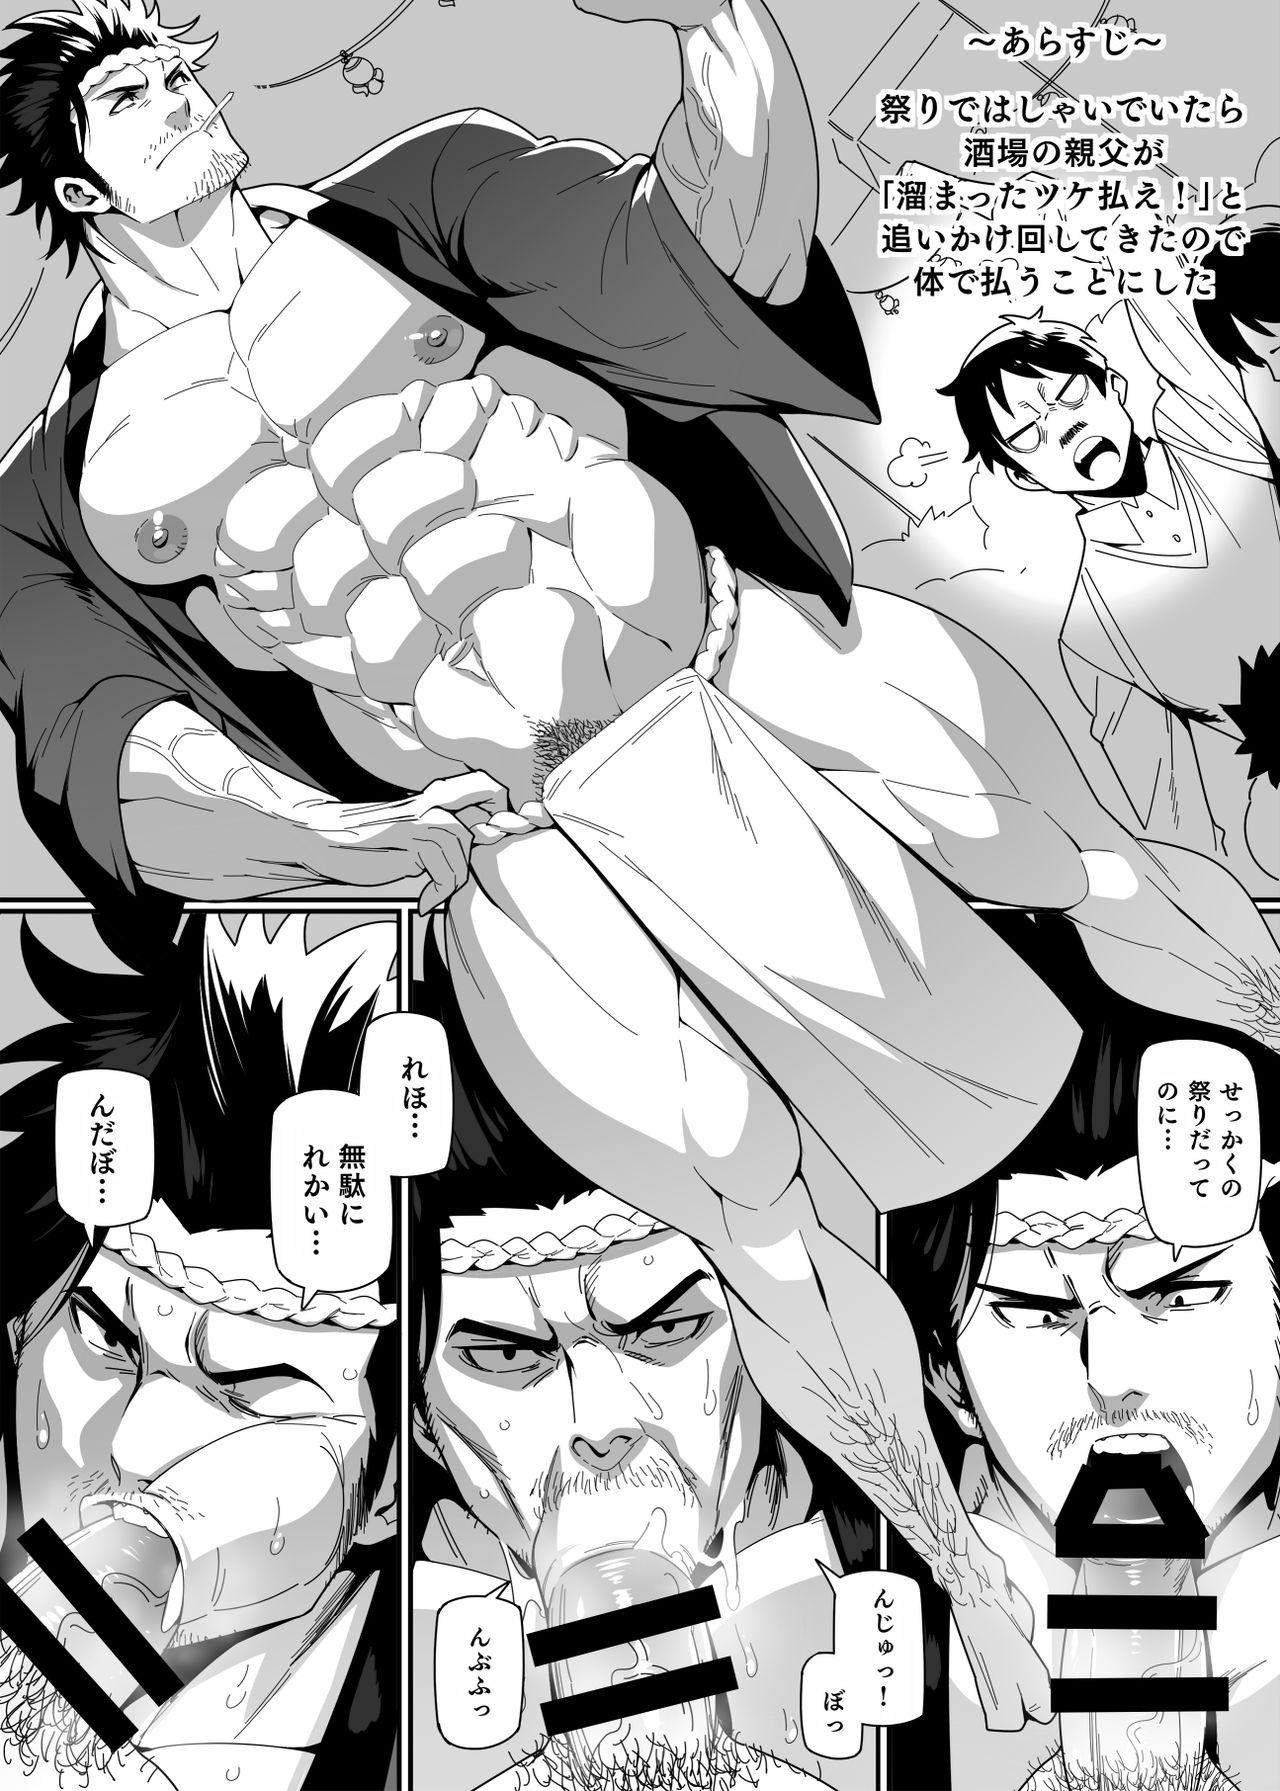 Teentube Matsuri no Yoru ni - Black clover Comedor - Page 2